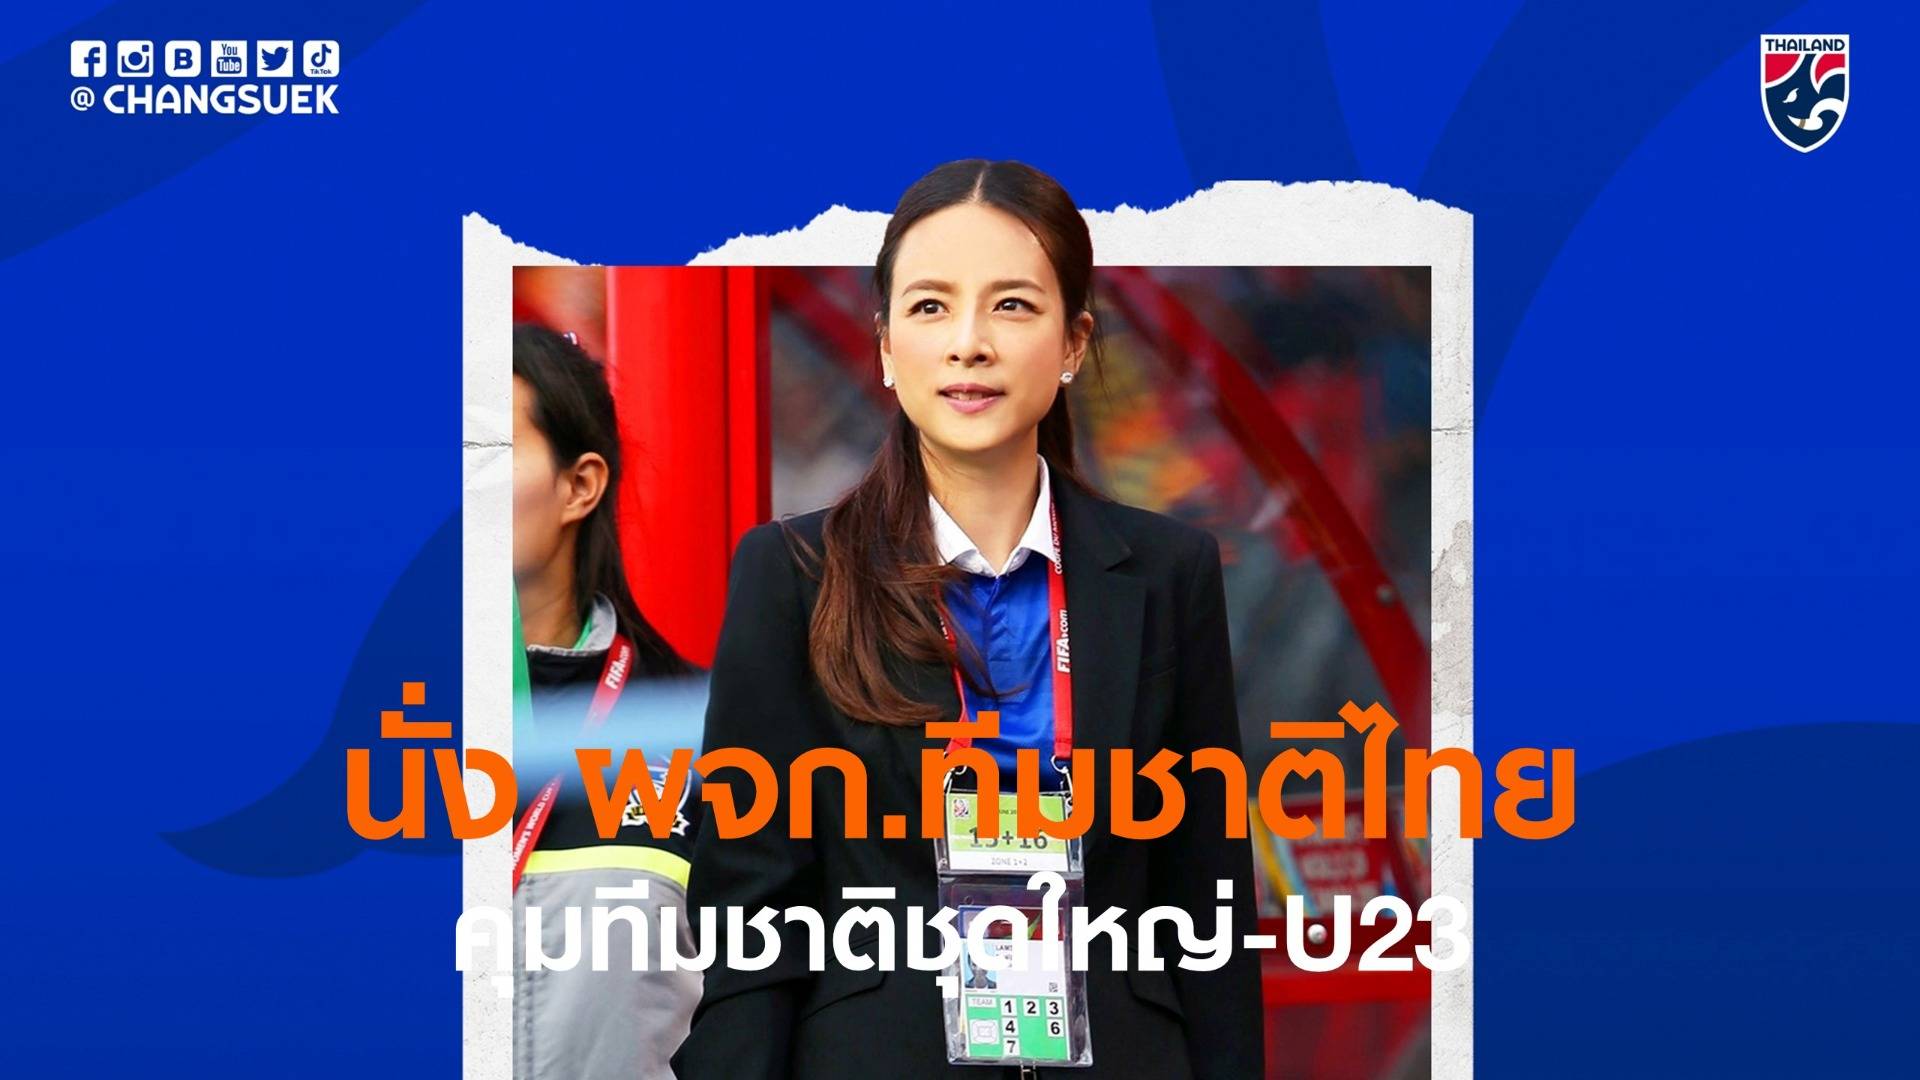 "มาดามแป้ง" นั่ง ผจก.ทีมชาติไทยคุม "ชุดใหญ่ - U23"